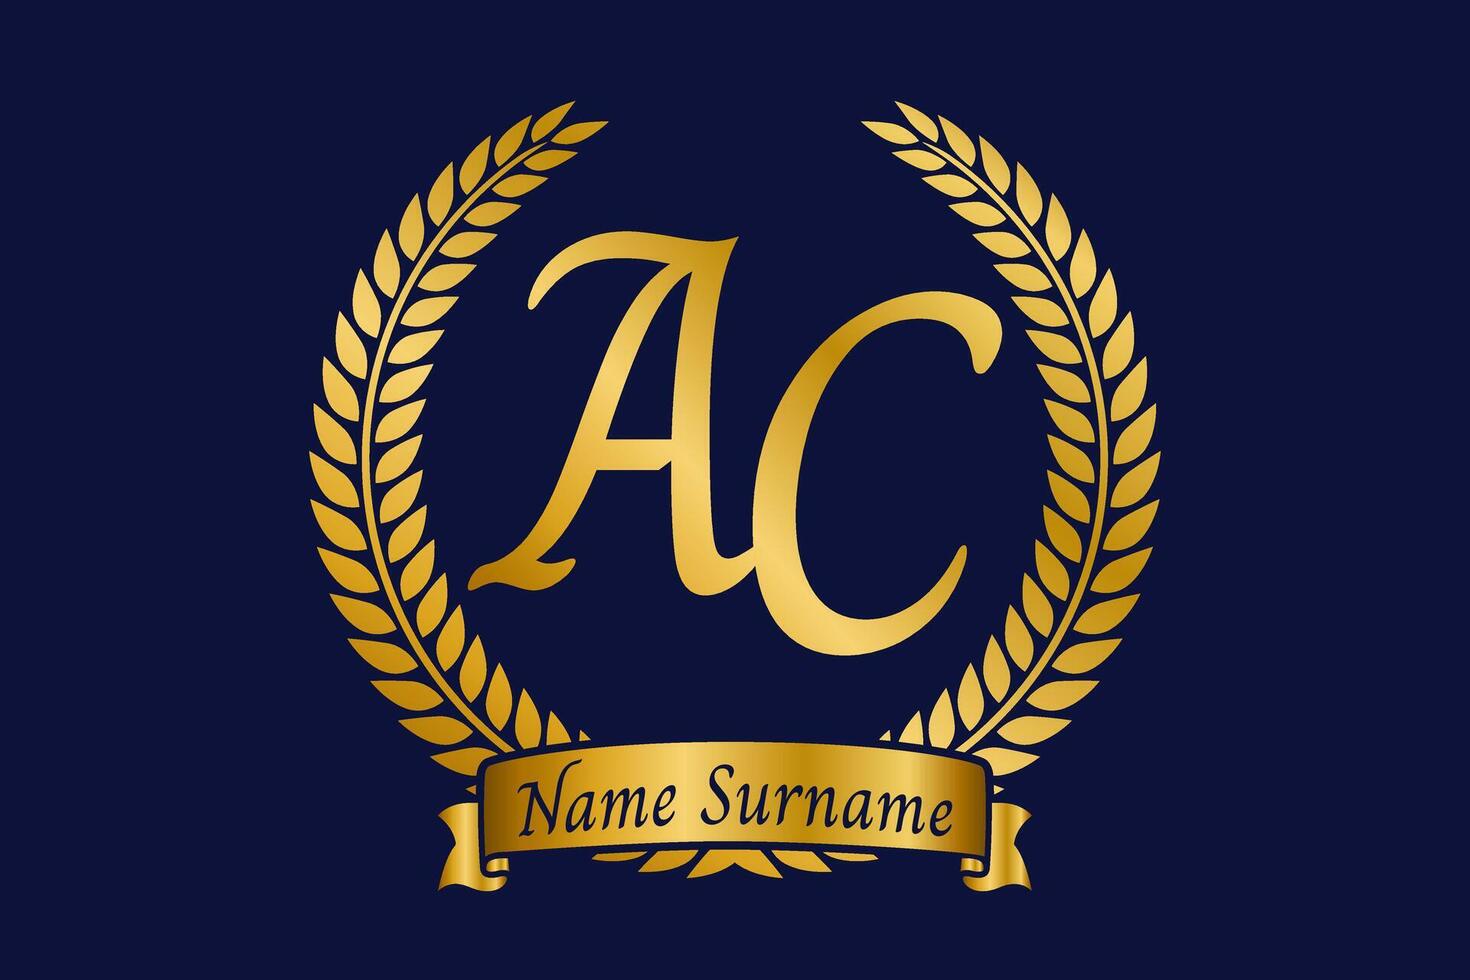 eerste brief een en c, ac monogram logo ontwerp met laurier lauwerkrans. luxe gouden schoonschrift lettertype. vector